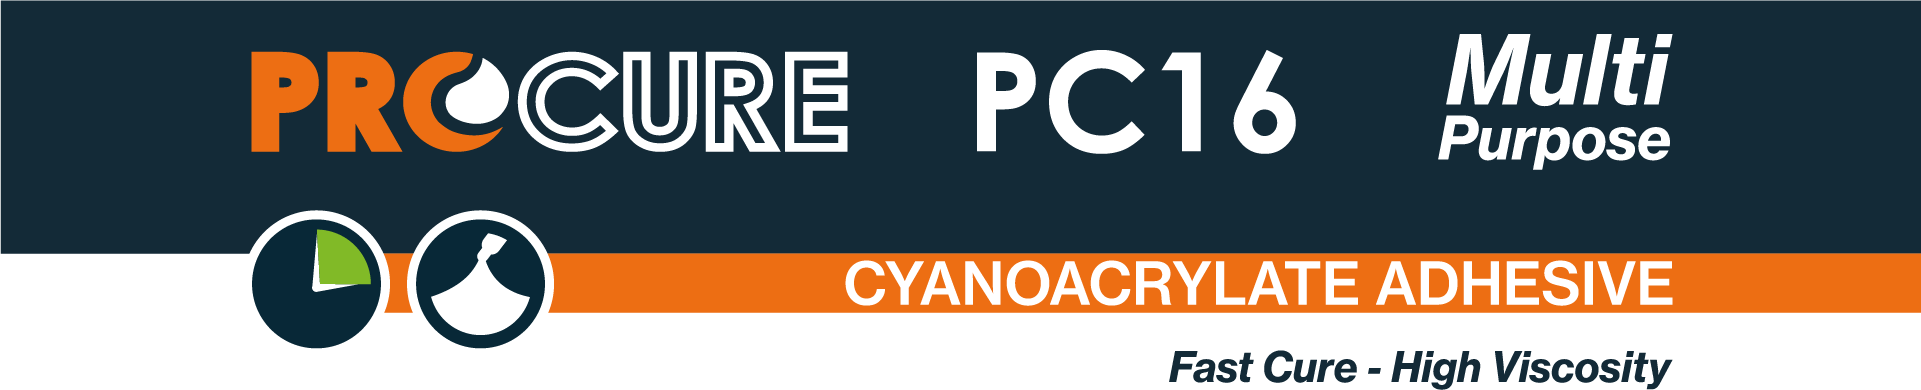 Procure PC16 Cyanoacrylate Adhesive.